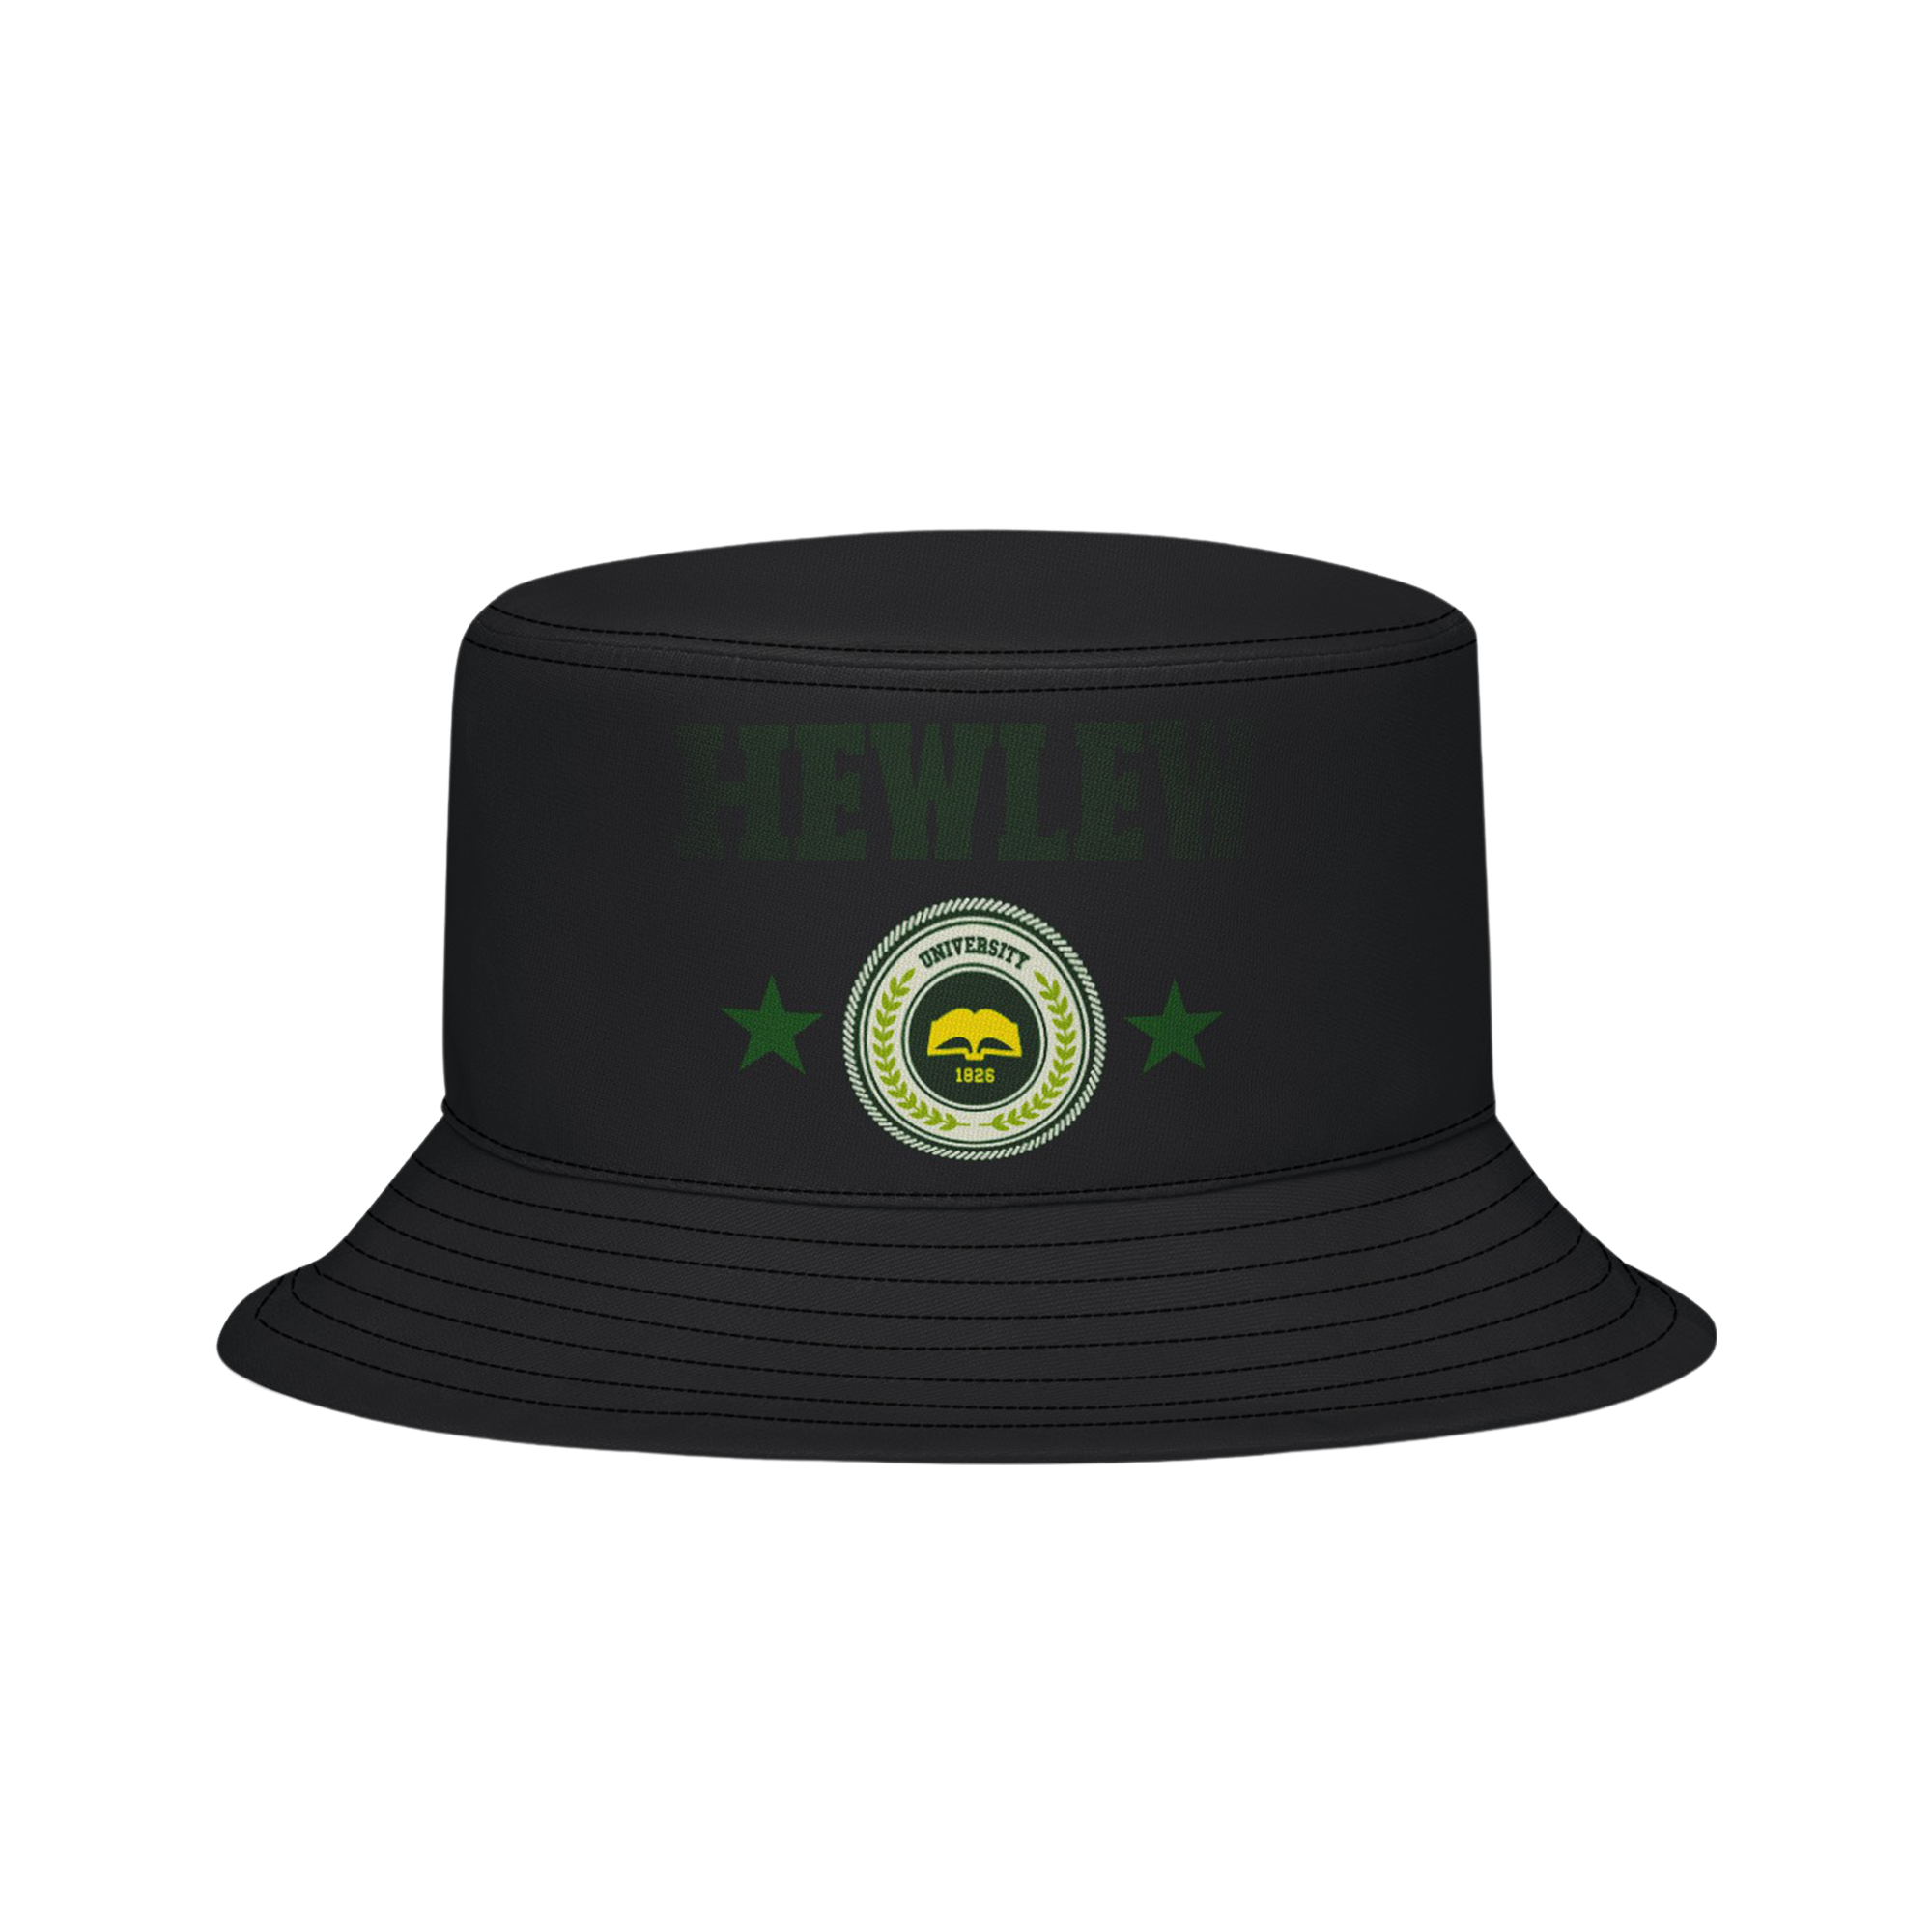 Hewlew Star Bucket Hat